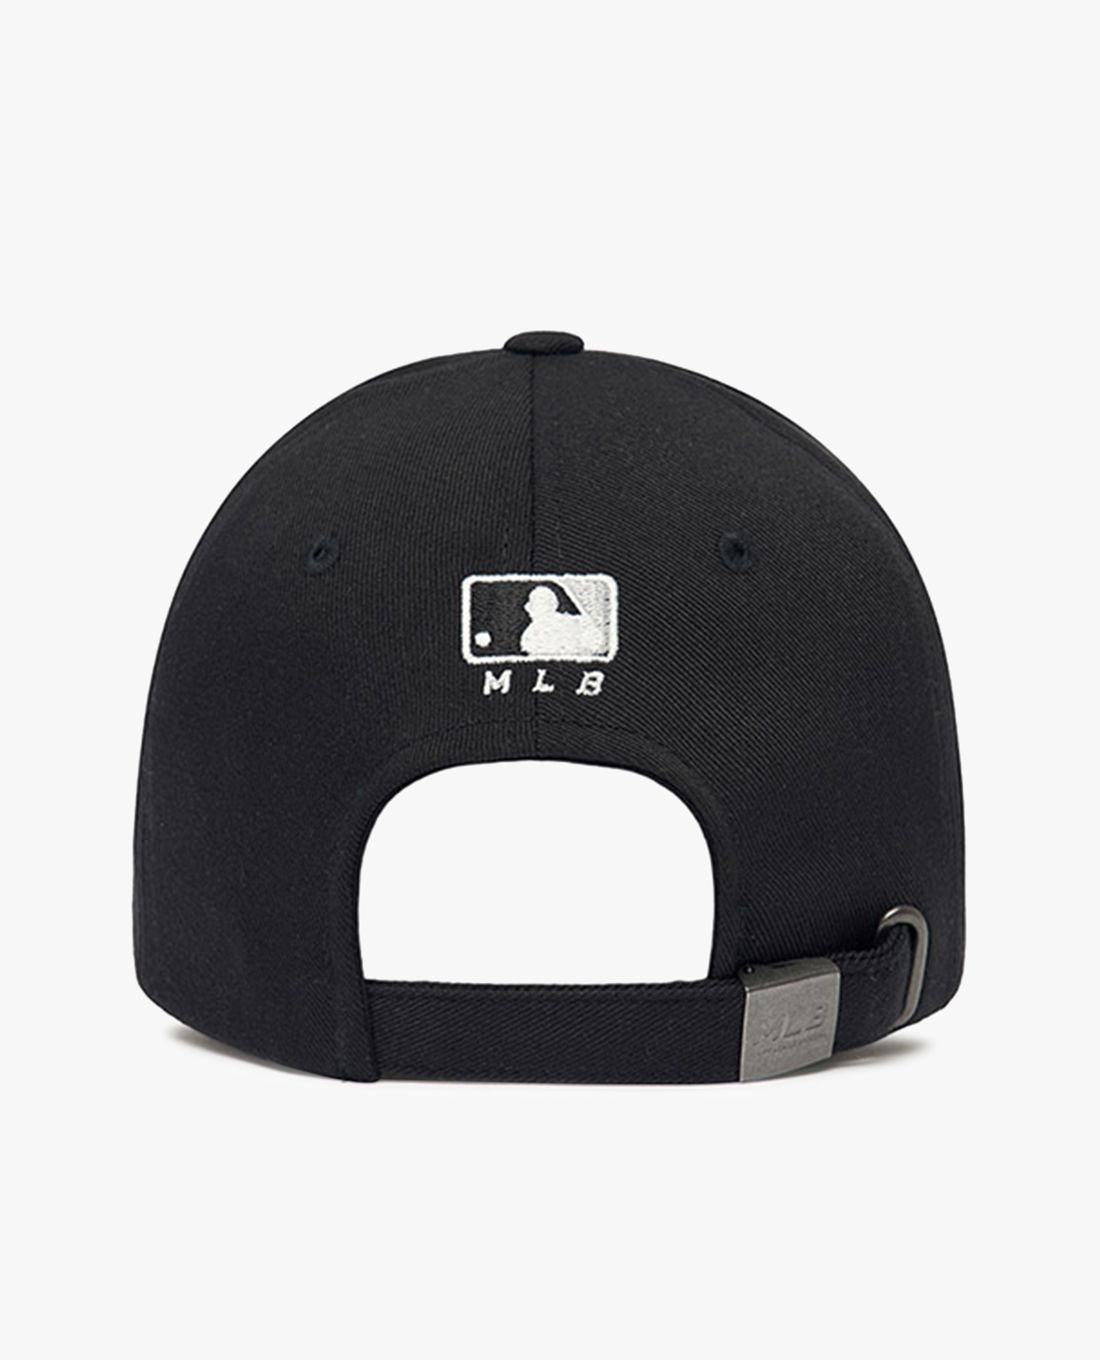 Phụ Kiện Chính Hãng - Mũ Nón Lưỡi Trai MLB Big Logo LA 'Black' New Fit Structurerai - 3ACP0802N